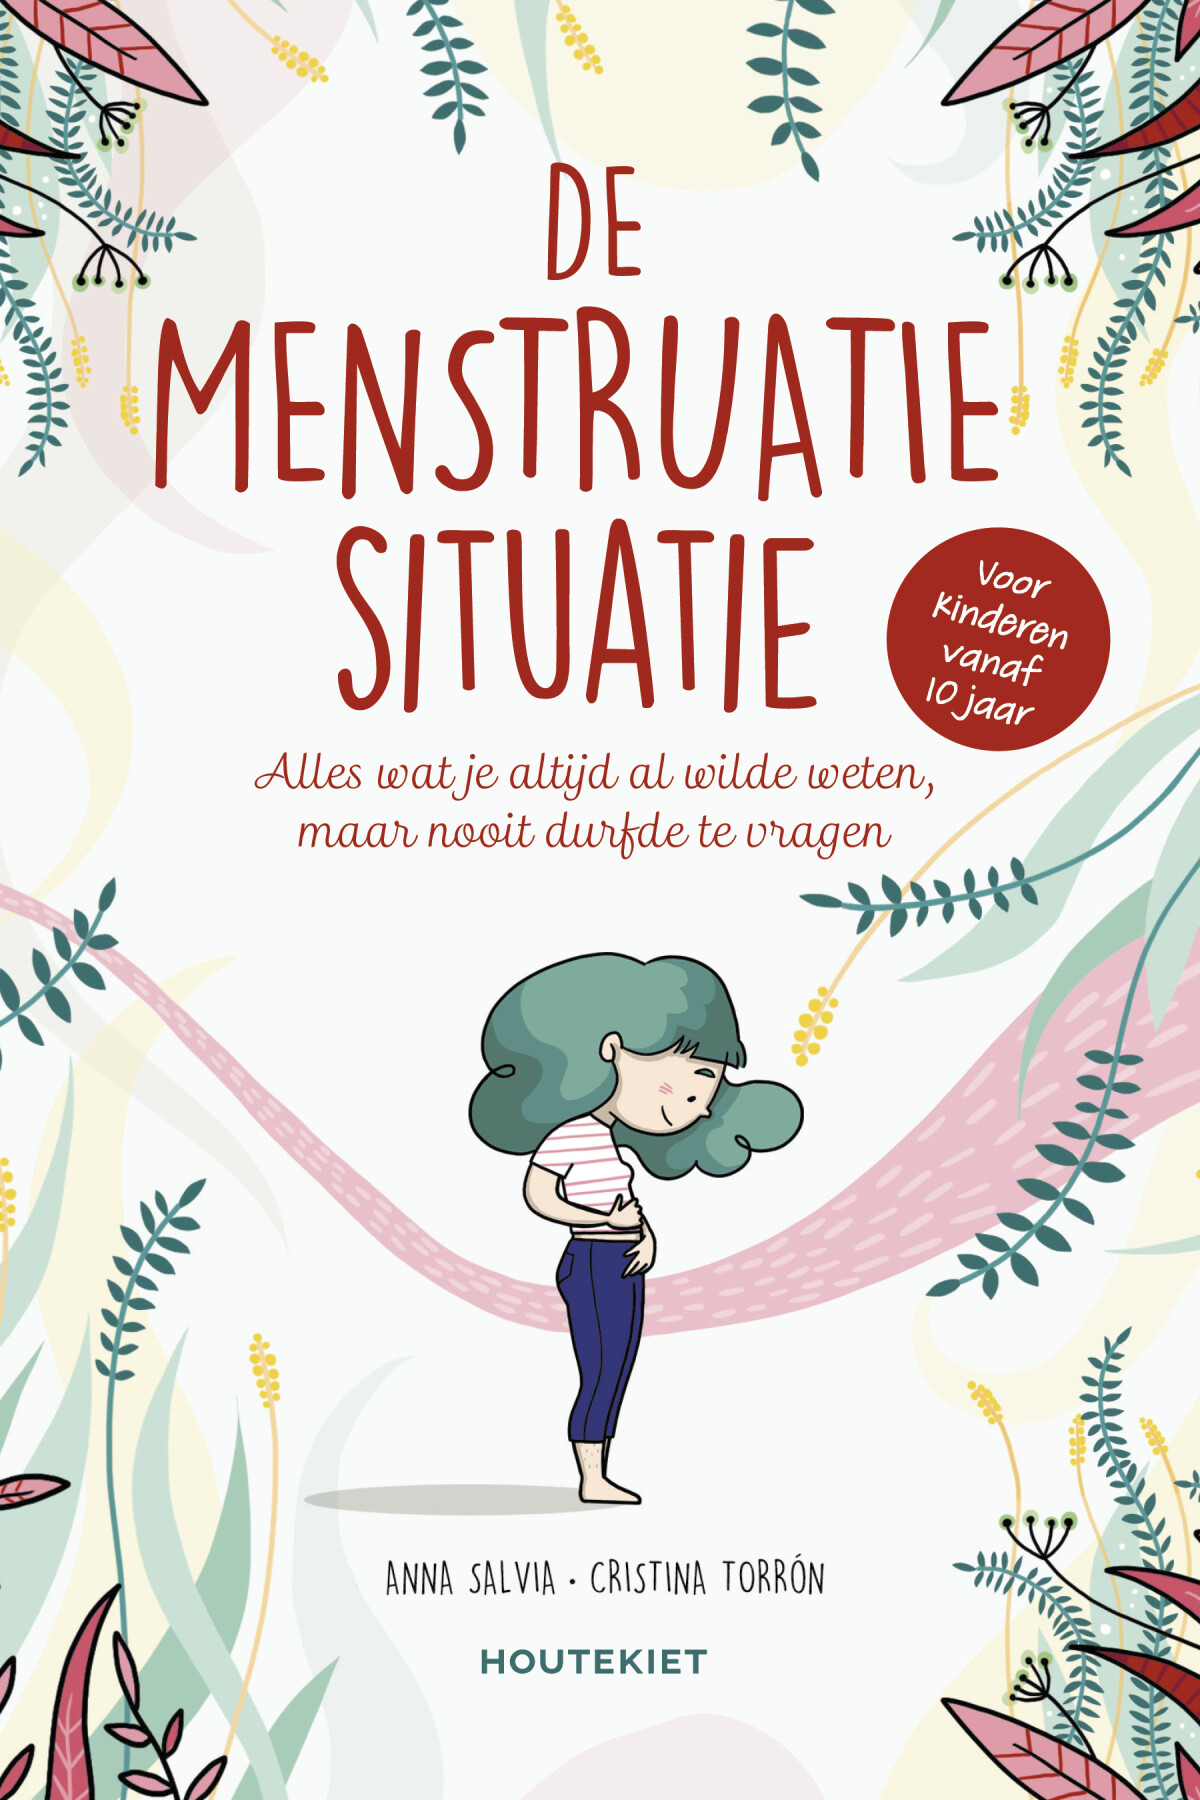 De menstruatiesituatie